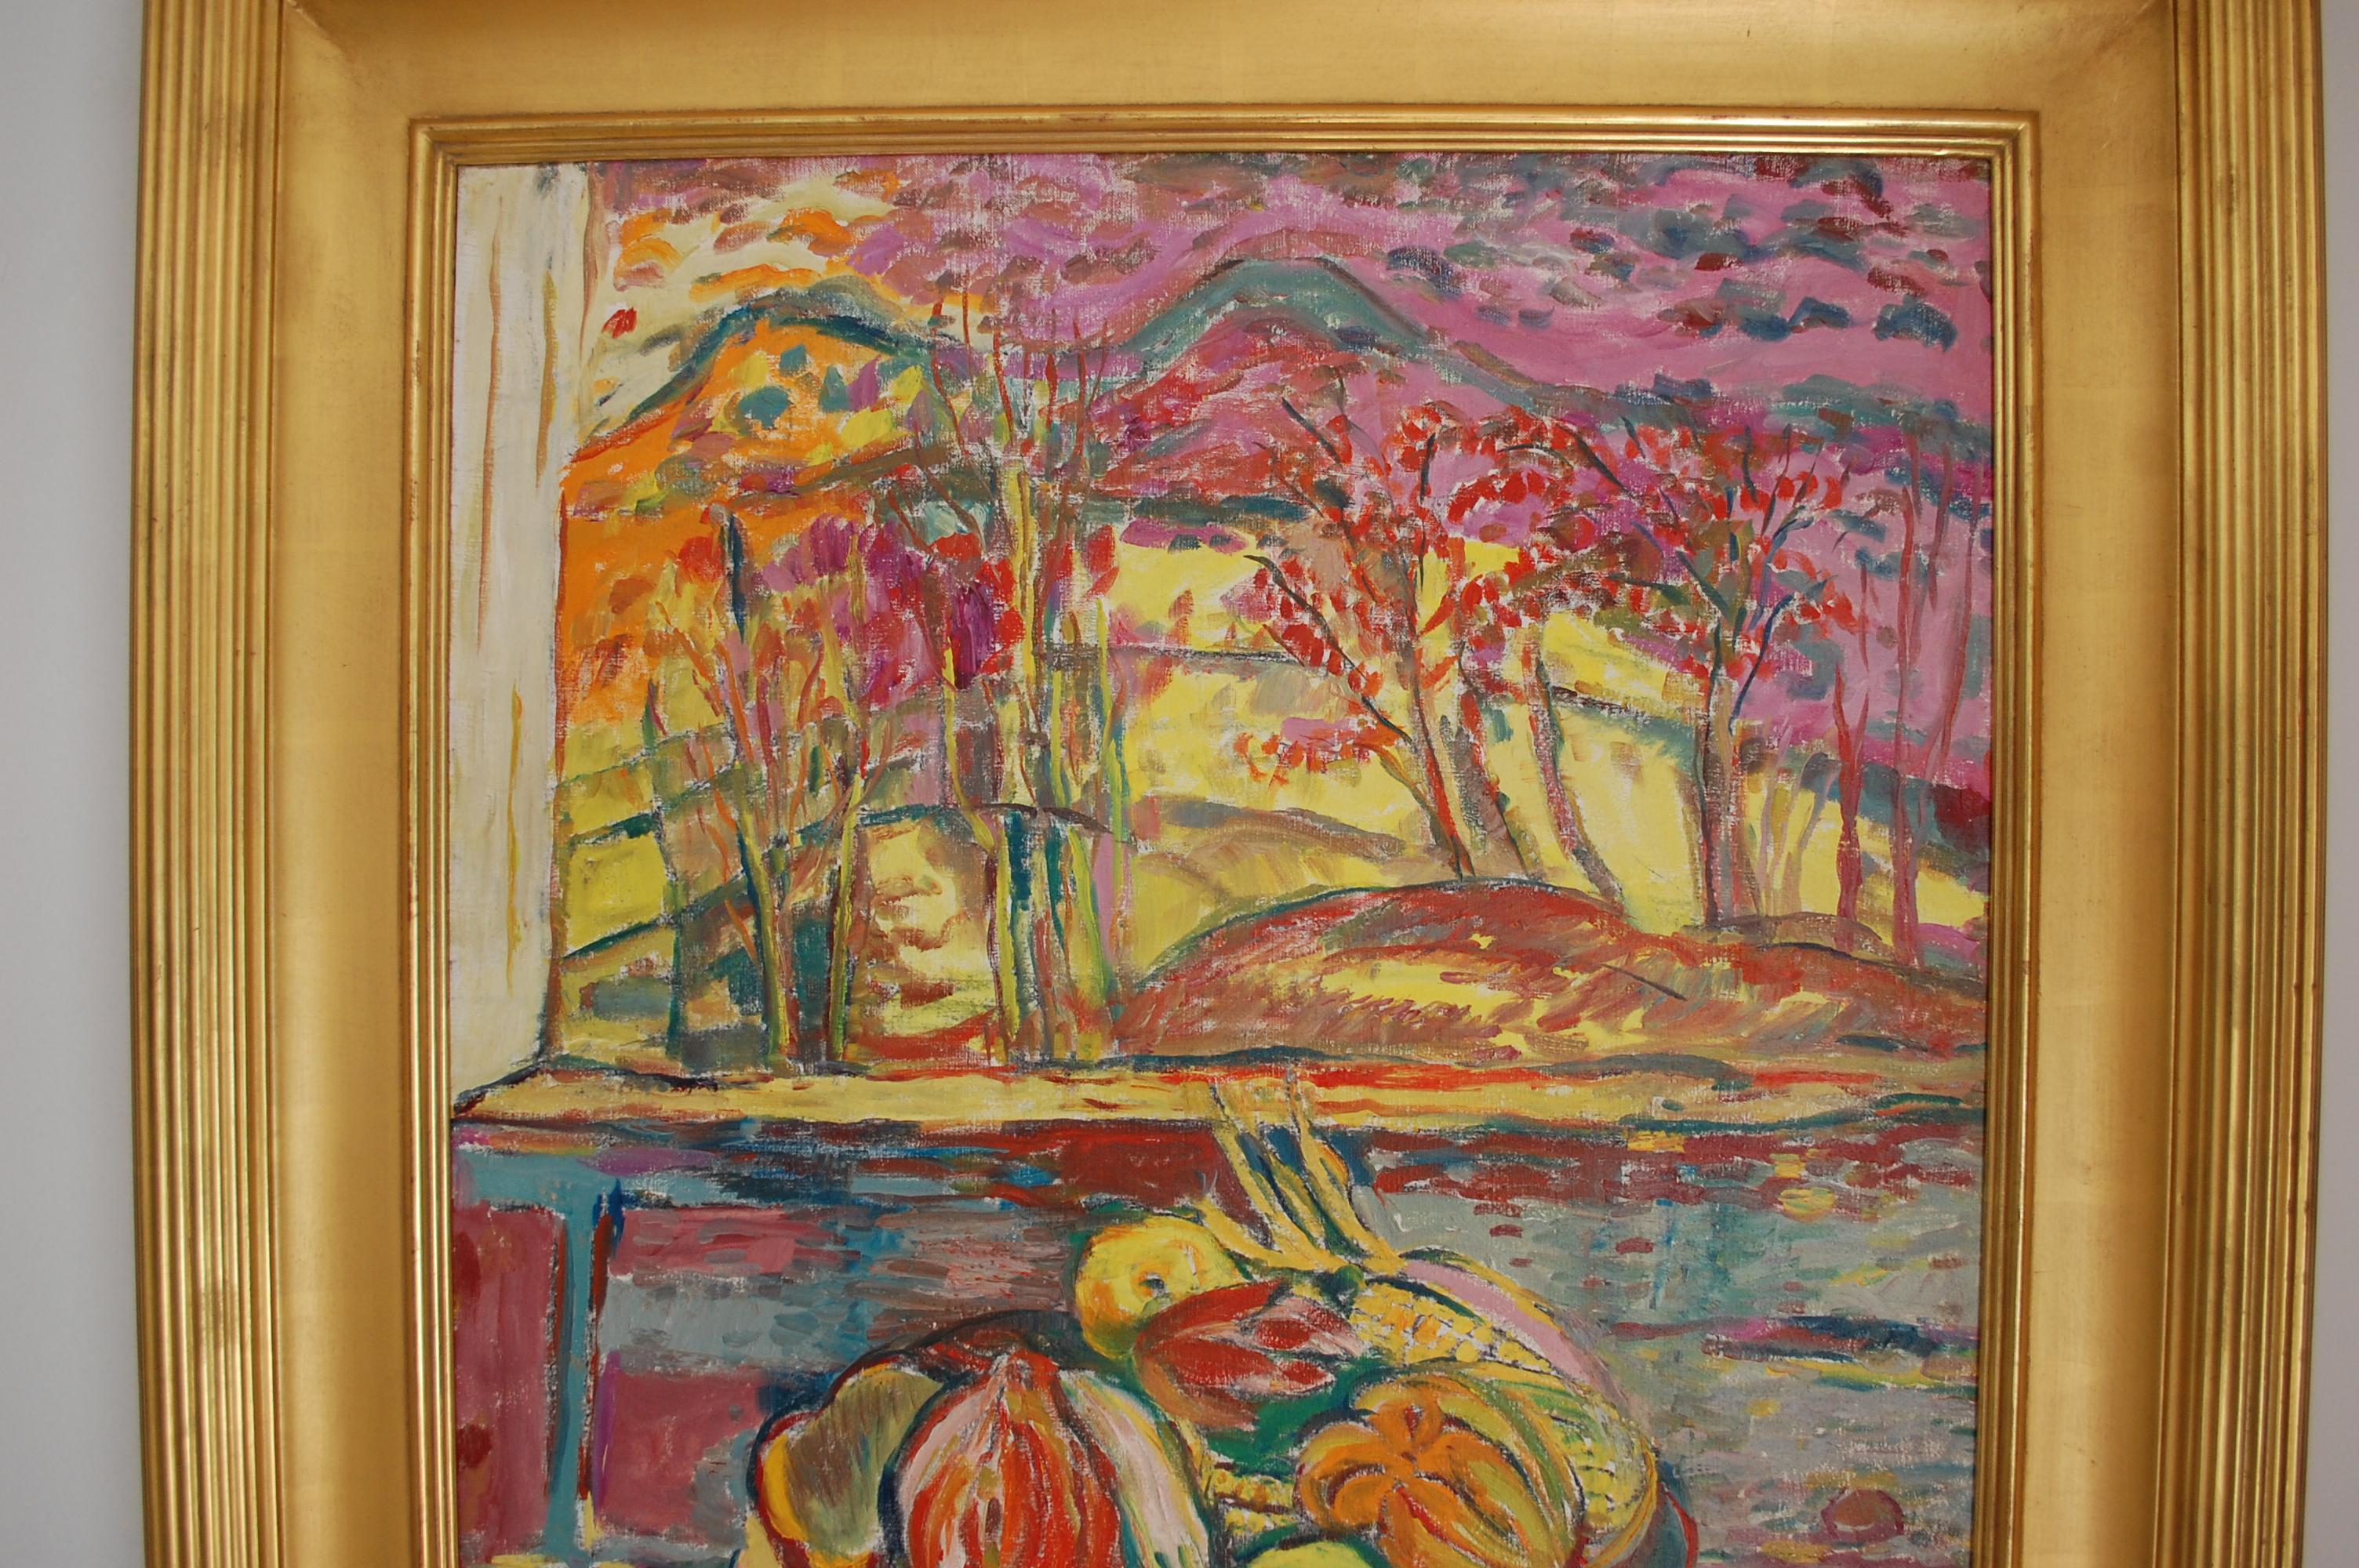  Les fruits sur la table
 Signature de l'artiste en bas à droite, cadre à la feuille d'or fait sur mesure par Motyka, taille de la toile 30x24 cadre 38x32.
Judith Sobel est née à Lwow, en Pologne, en 1924. Après la Seconde Guerre mondiale, elle a